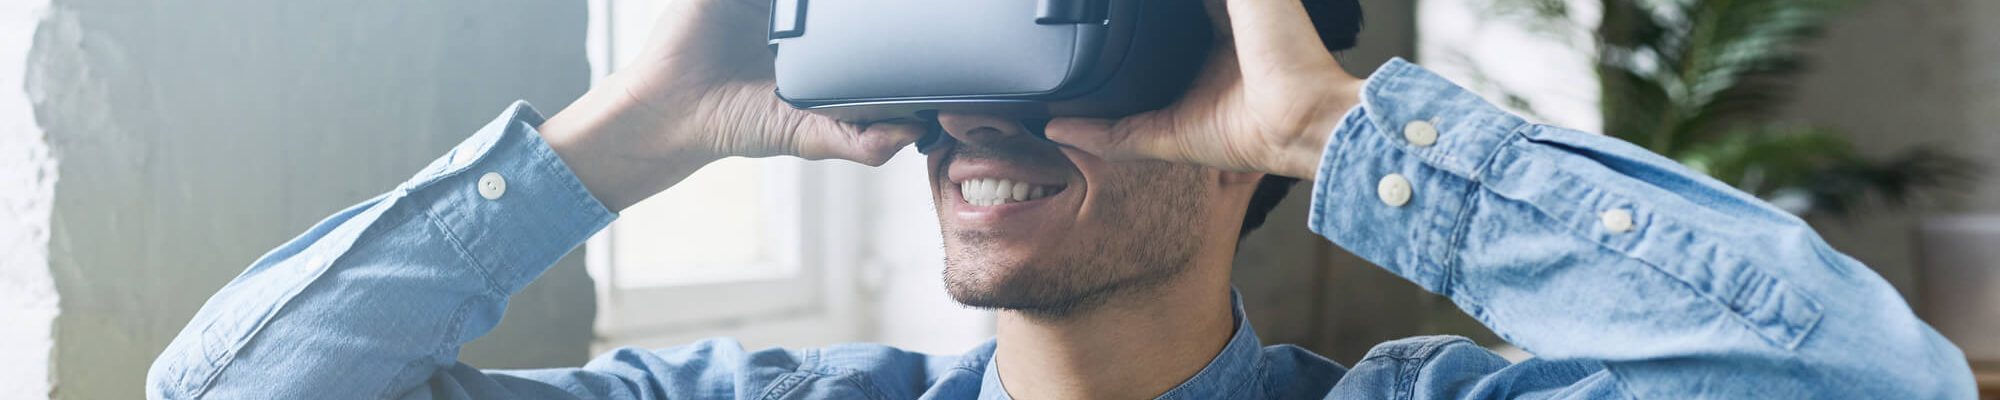 realidade-virtual-como-usar-essa-tecnologia-em-seus-treinamentos.jpeg